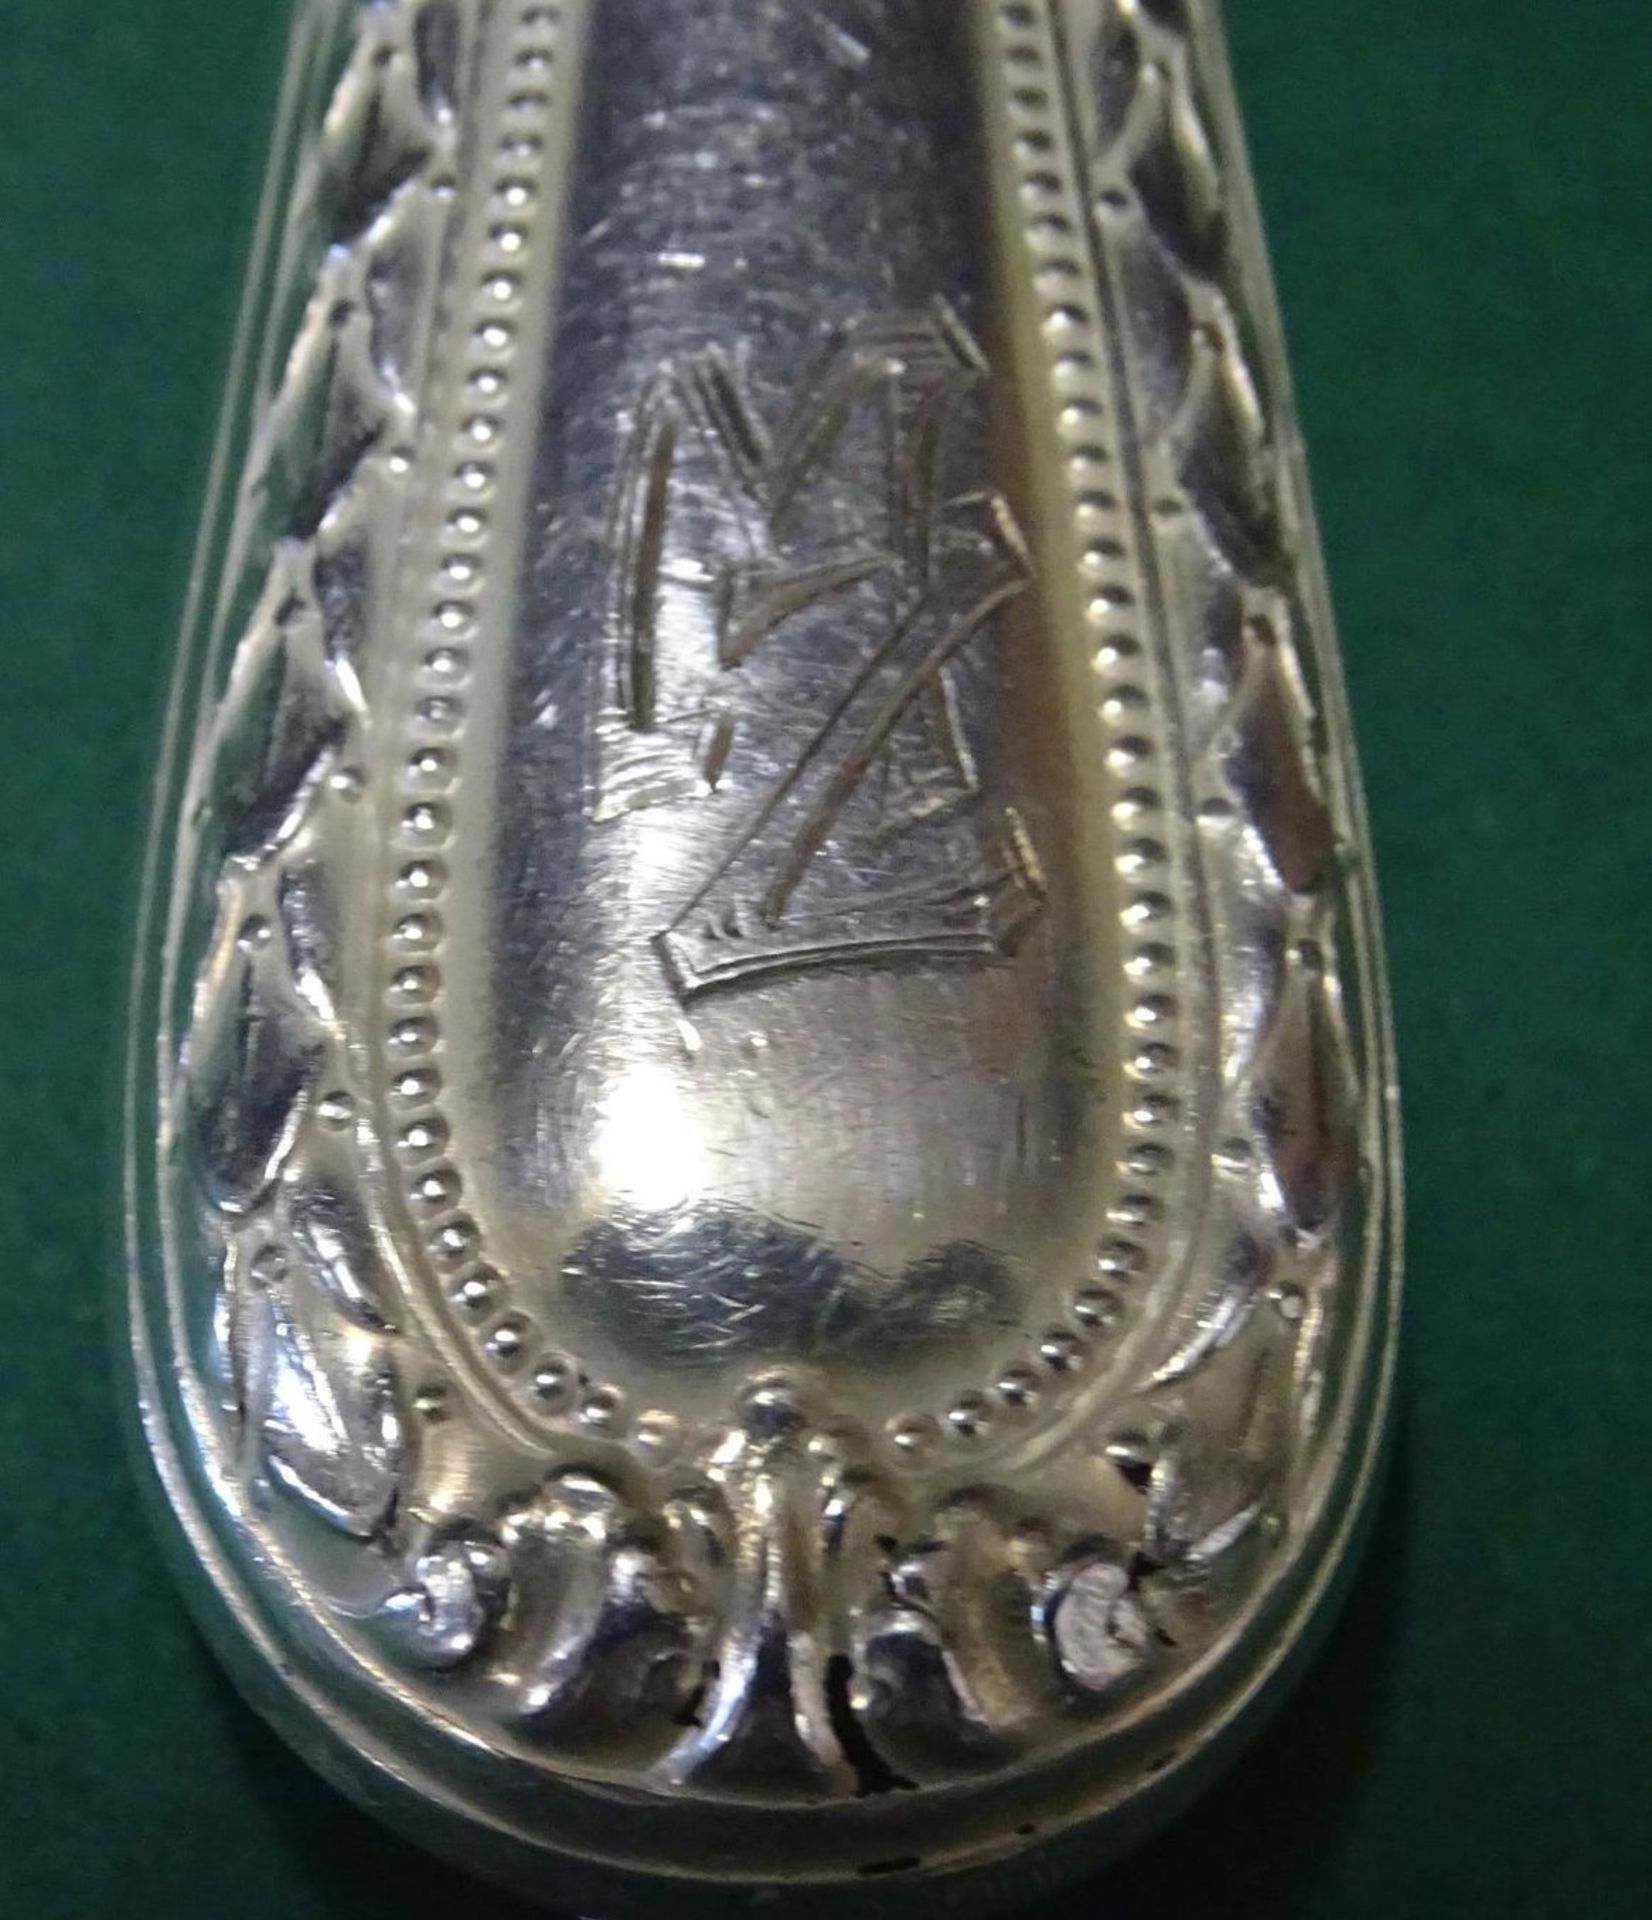 30 tg. Silberbesteck-800- "Wempe" mit Ziermonogramm MZ, L- Messer 25 cm, , ohne Messer gewogen - Bild 5 aus 6